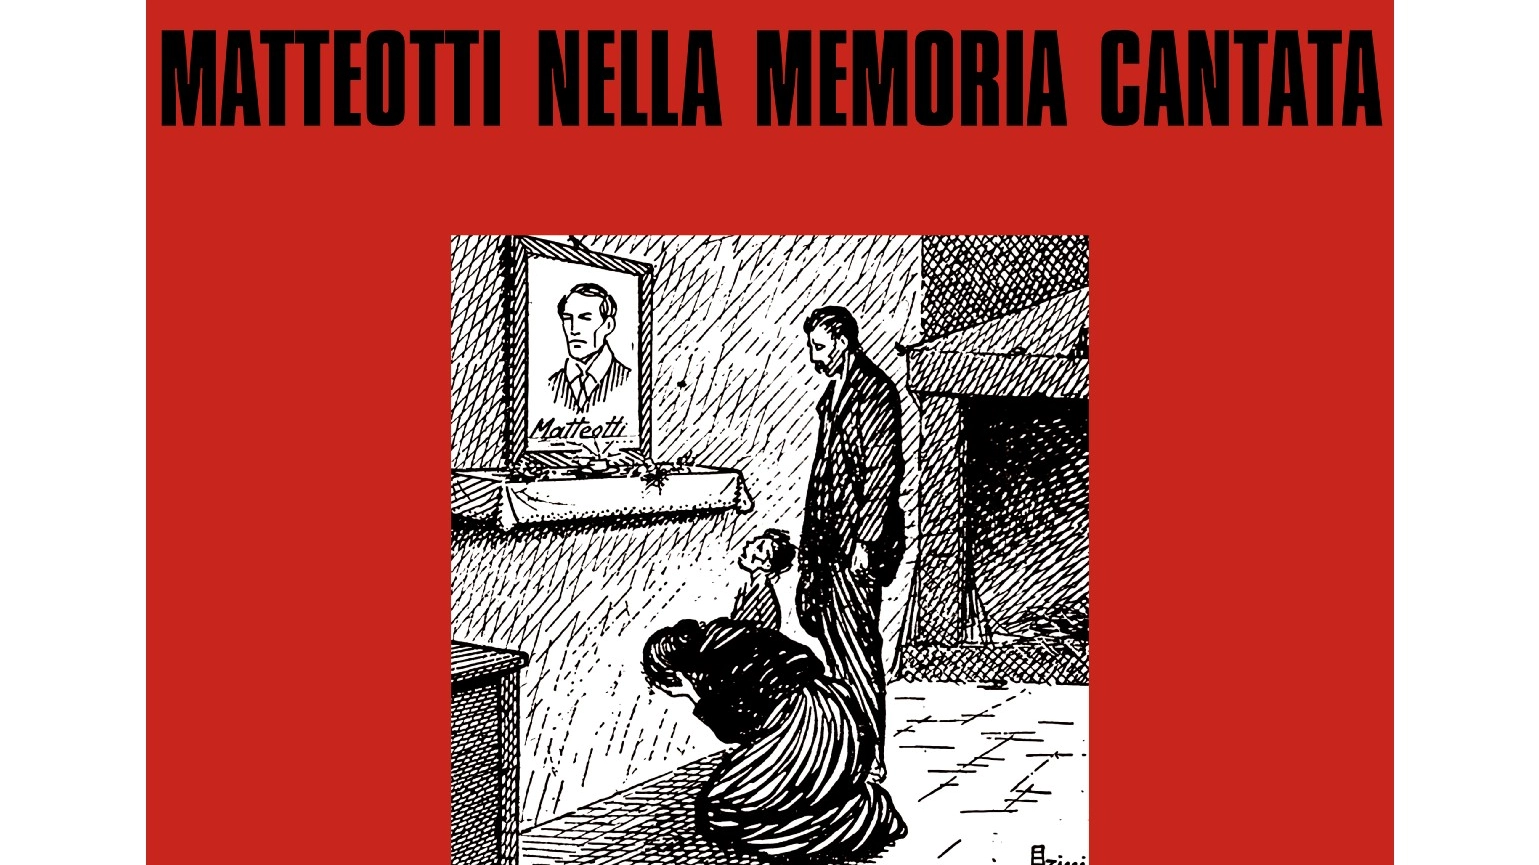 La copertina del libro "Matteotti nella memoria cantata"